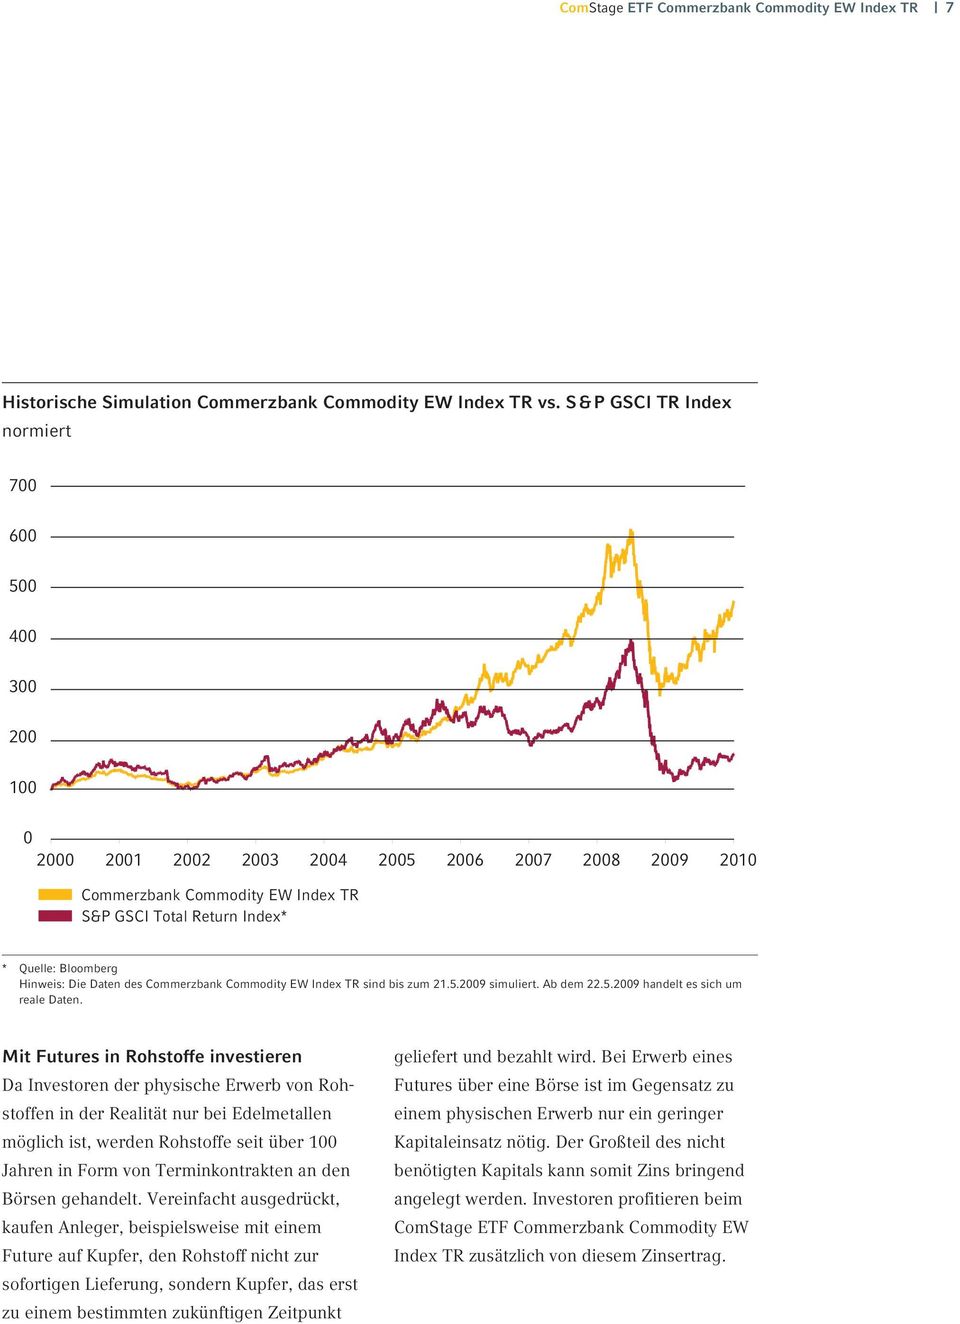 Hinweis: Die Daten des Commerzbank Commodity EW Index TR sind bis zum 21.5.2009 simuliert. Ab dem 22.5.2009 handelt es sich um reale Daten.